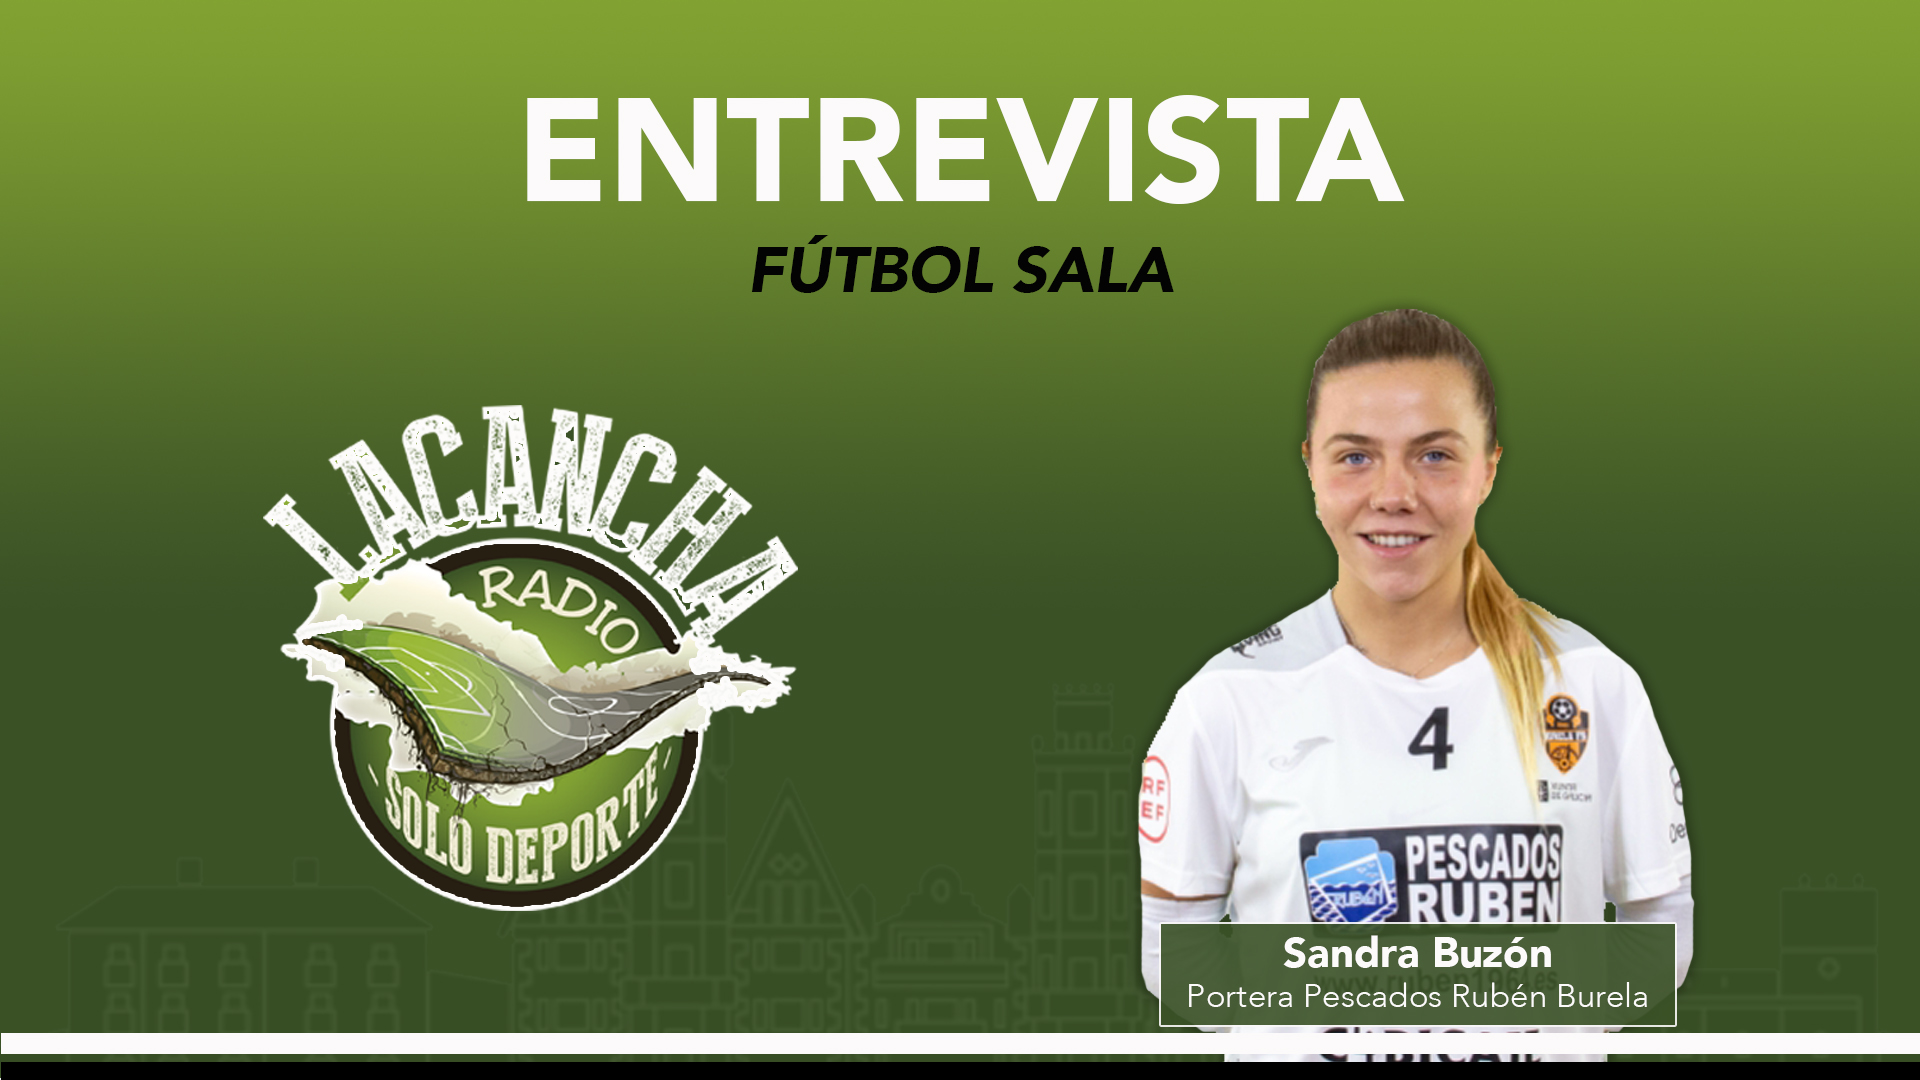 Entrevista con Sandra Buzón, portera del Pescados Rubén Burela de fútbol sala (03/02/2022)